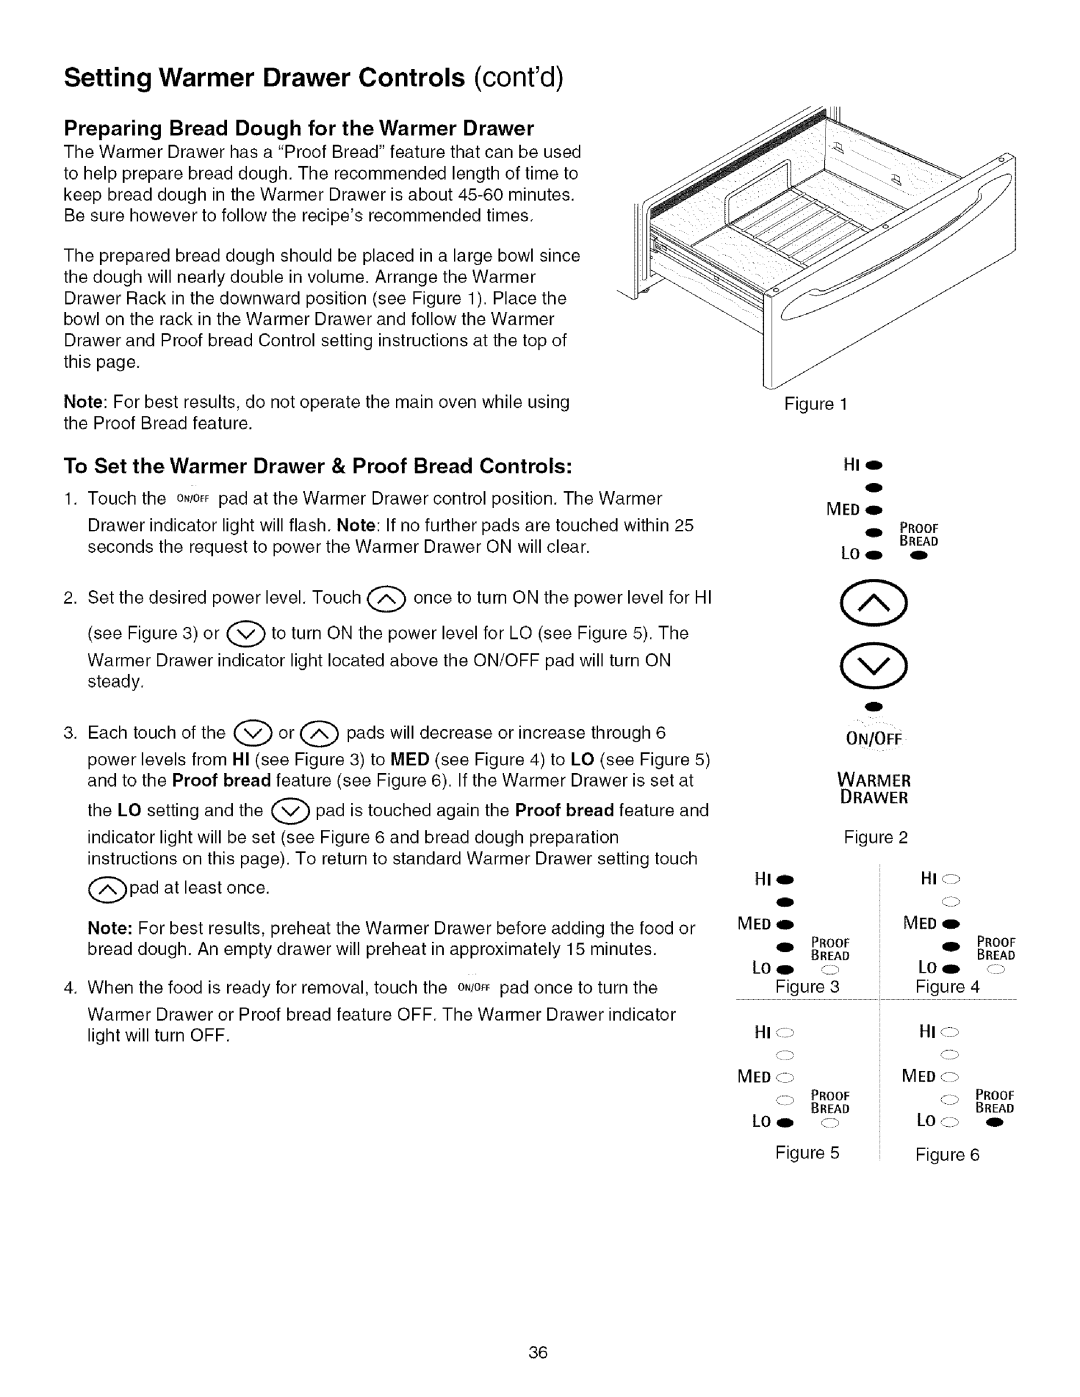 Kenmore 790.4672 manual Setting Warmer Drawer Controls contd, Preparing Bread Dough for the Warmer Drawer, HI <:7, Hi <-> 